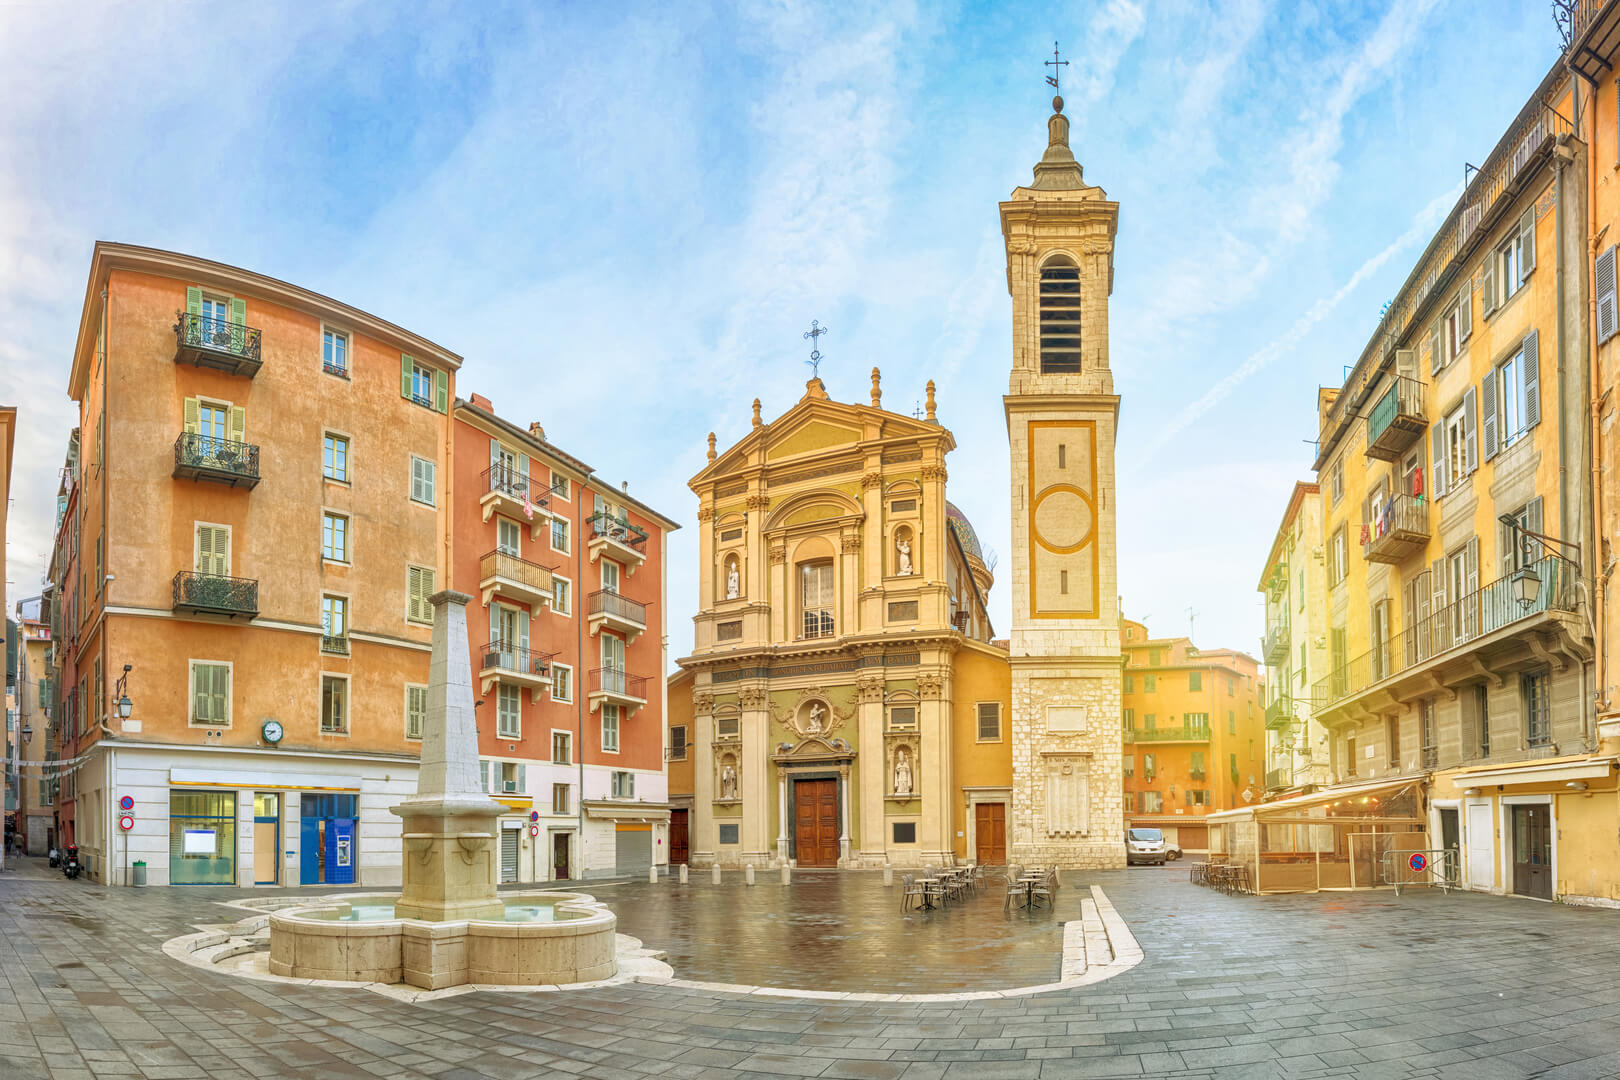 Cattedrale di Nizza in stile barocco situata sulla piazza Rossetti a Nizza, Alpi Marittime, Francia